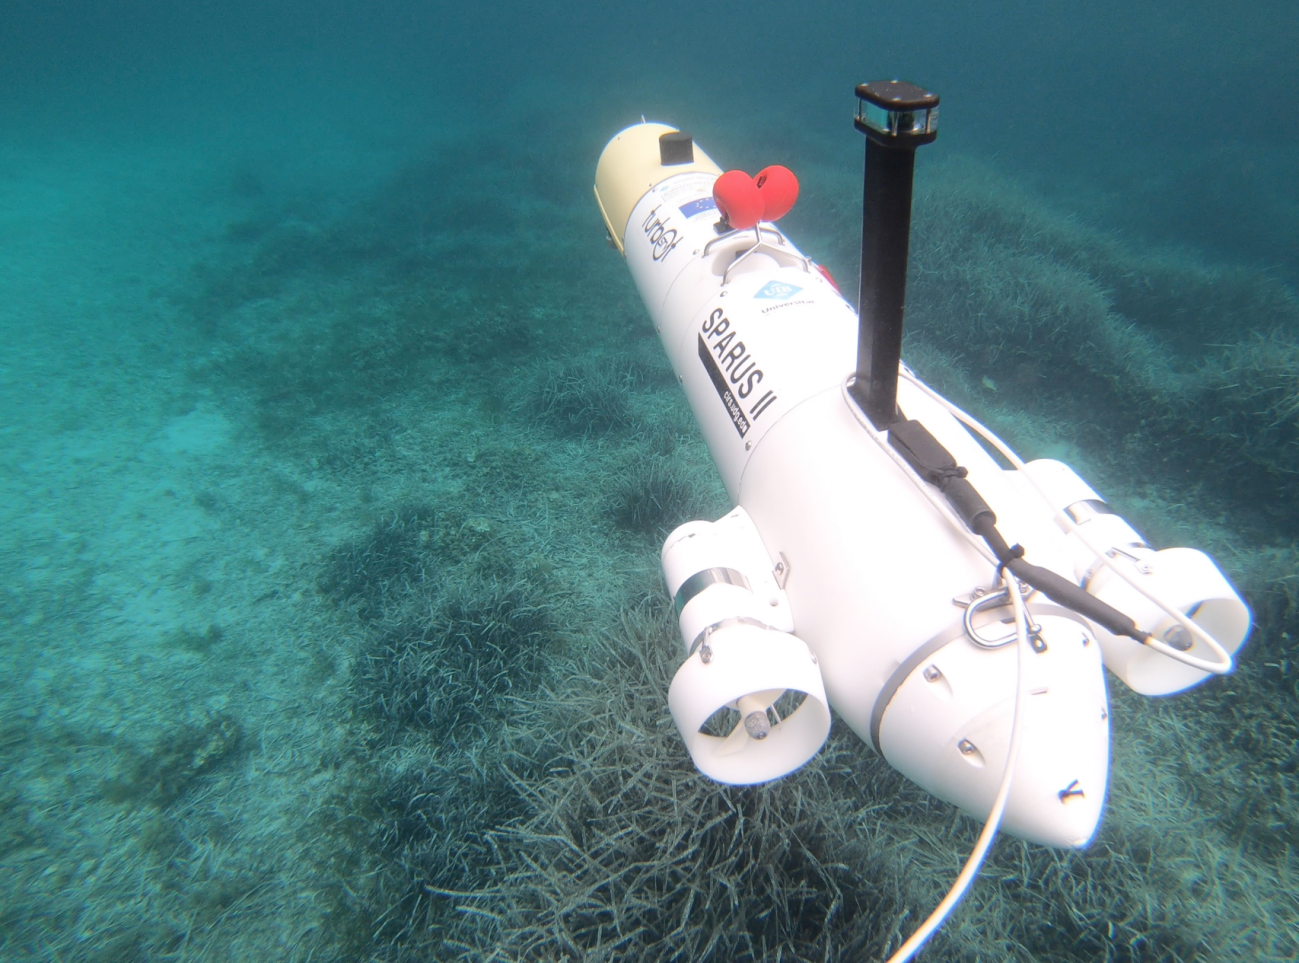 Robots e inteligencia artificial protegen y vigilan la vida submarina